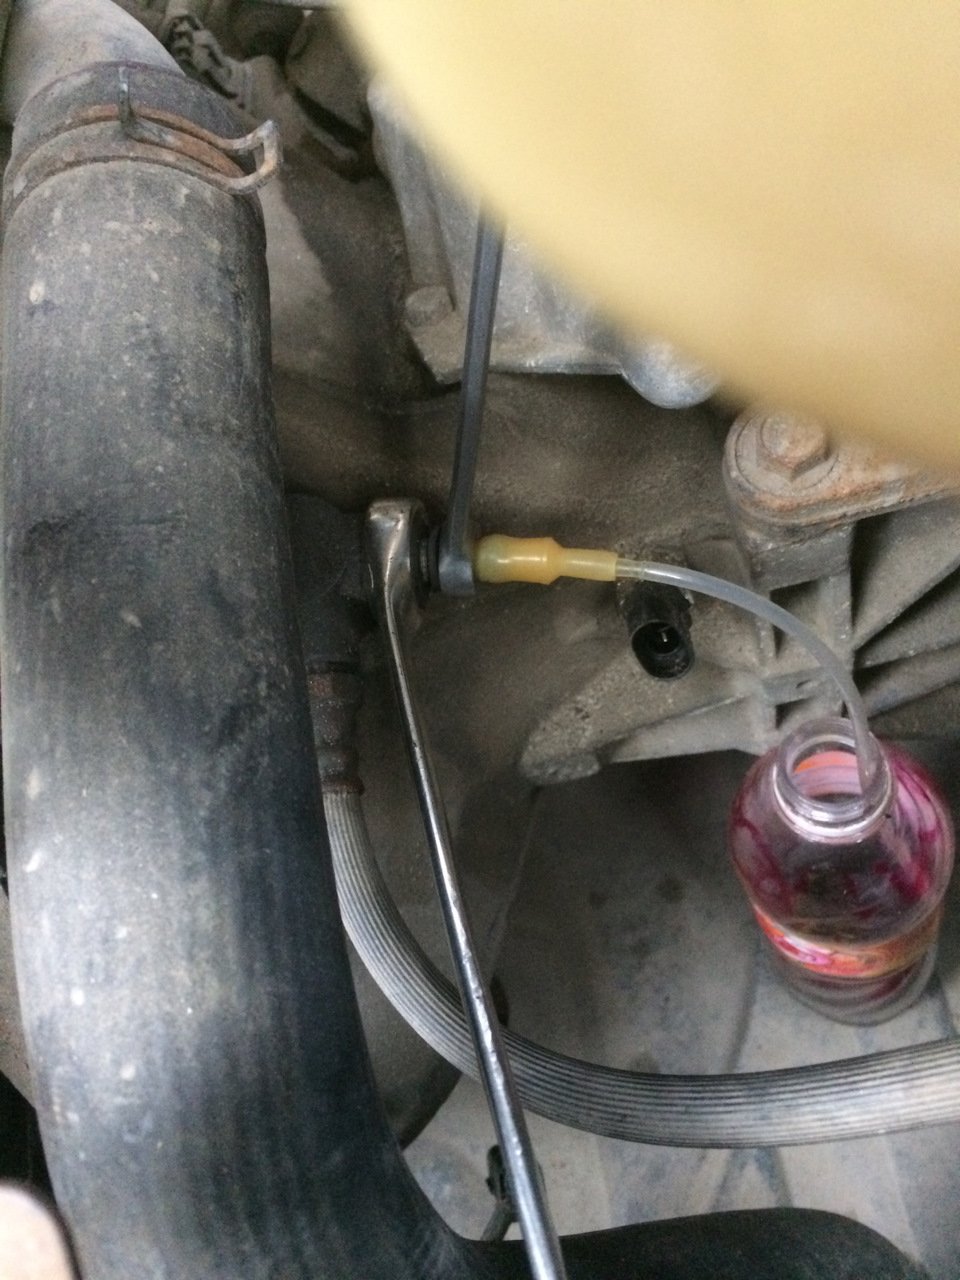 Для замены жидкости в гидроприводе сцепления автомобиля ВАЗ 2107 нужно отвернуть штуцер на рабочем цилиндре и работая педалью удалить ее, после чего залить новую и прокачать систему